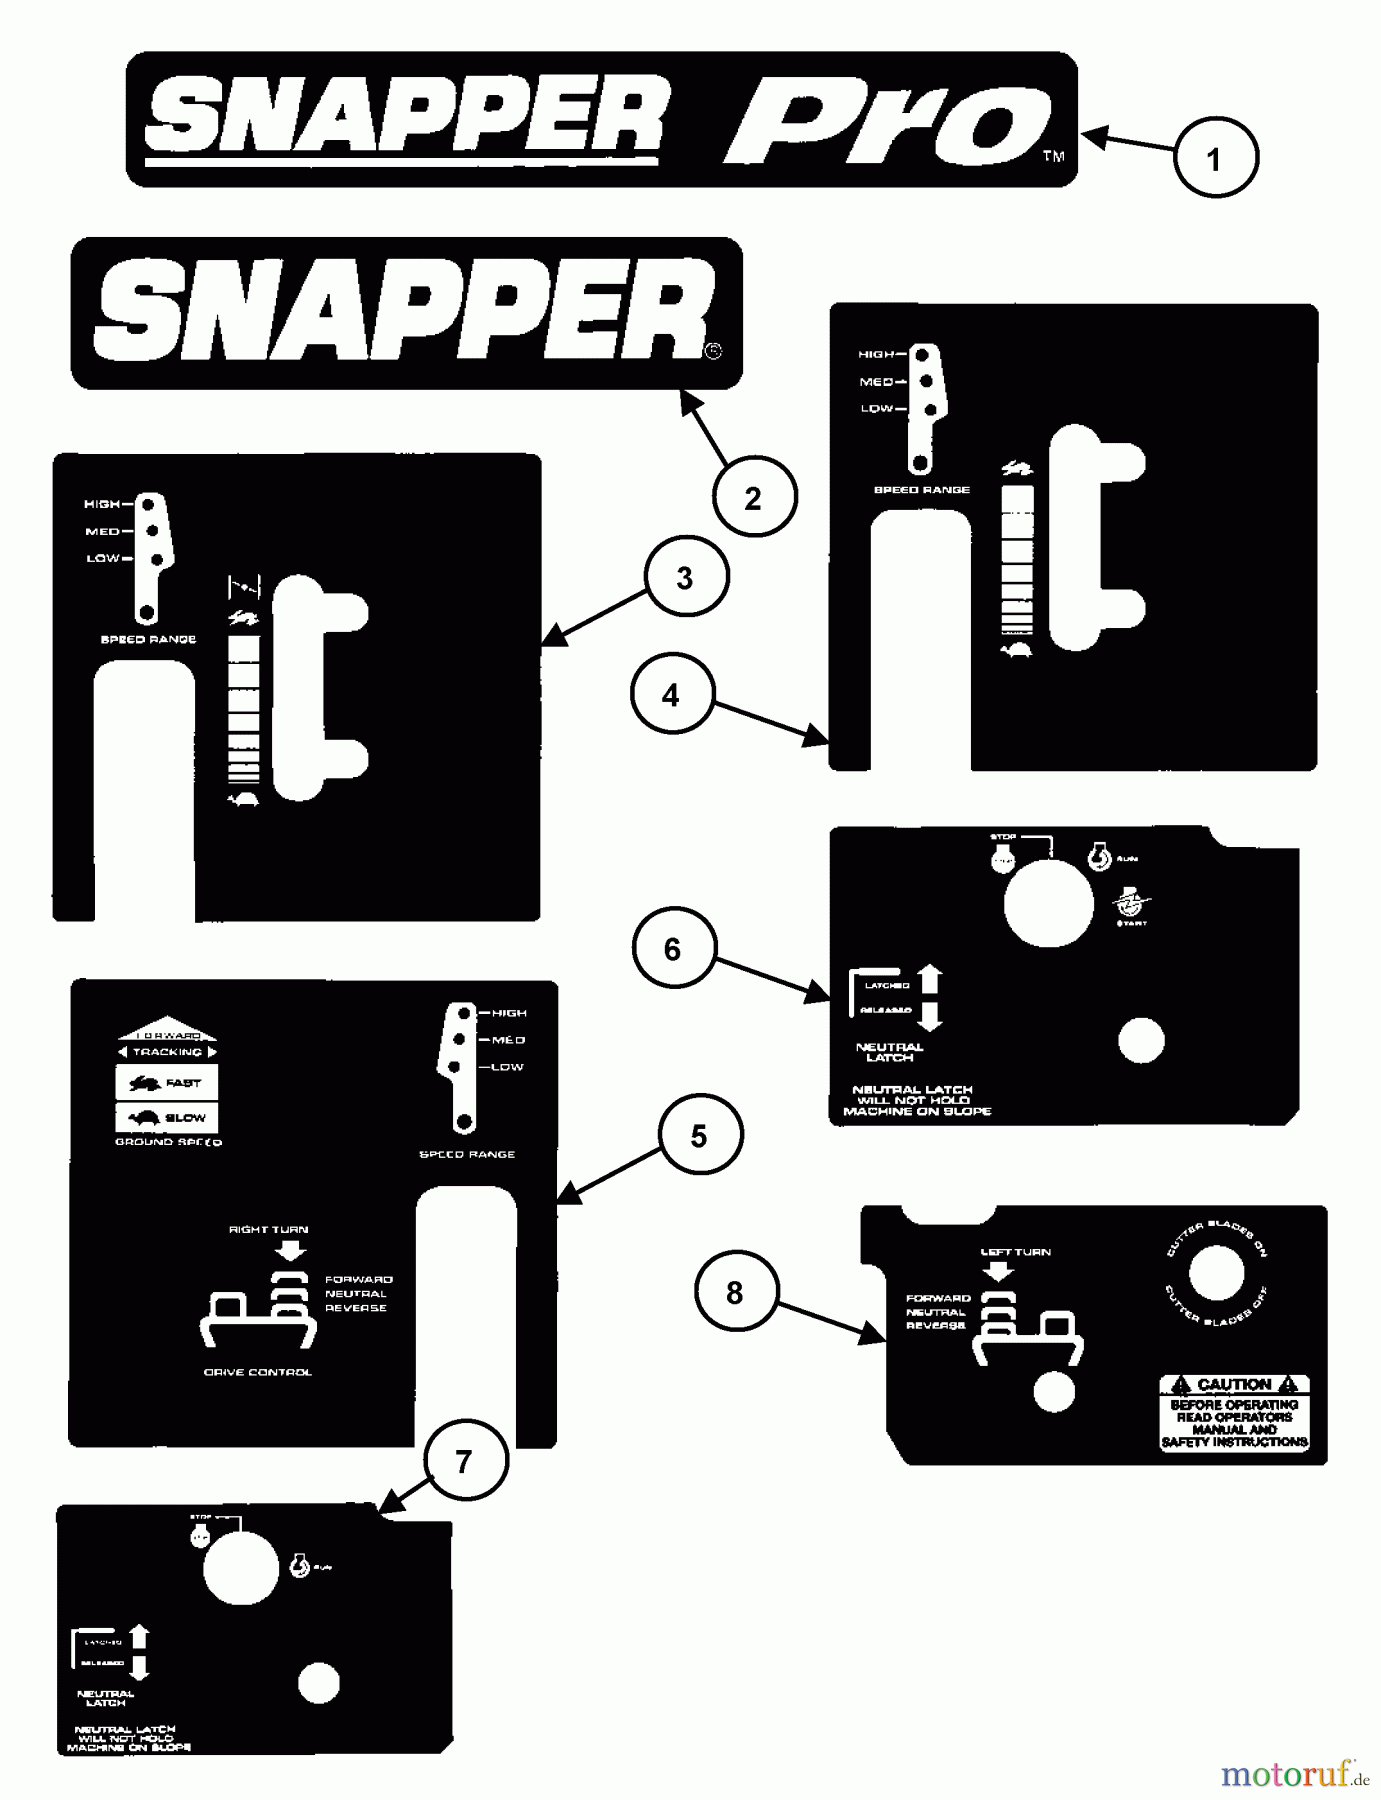  Snapper Rasenmäher für Großflächen SPLH140KW (84336) - Snapper Wide-Area Walk-Behind Mower, 14 HP, Hydro Drive, Loop Handle, Series 0 Decals (Part 2)